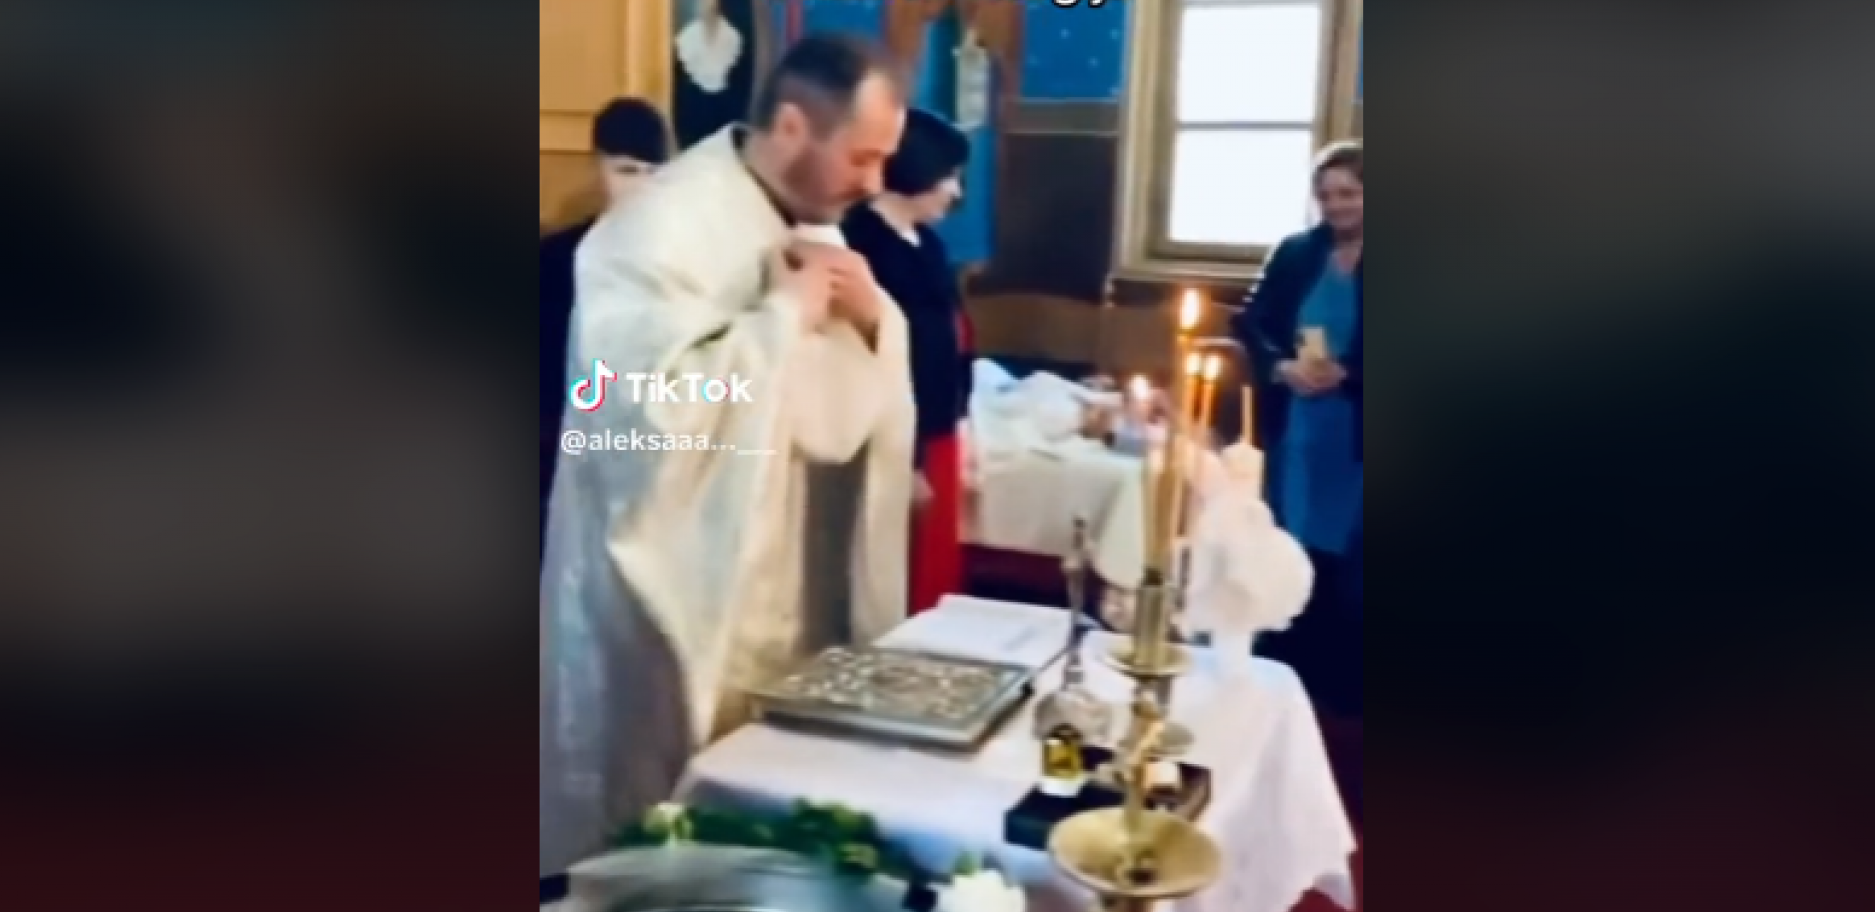 "BOGA MOLI ZA ZDRAVLJE, JER ZA PAMET JE VEĆ KASNO" Došao na liturgiju, pa obrnuo slot! (VIDEO)